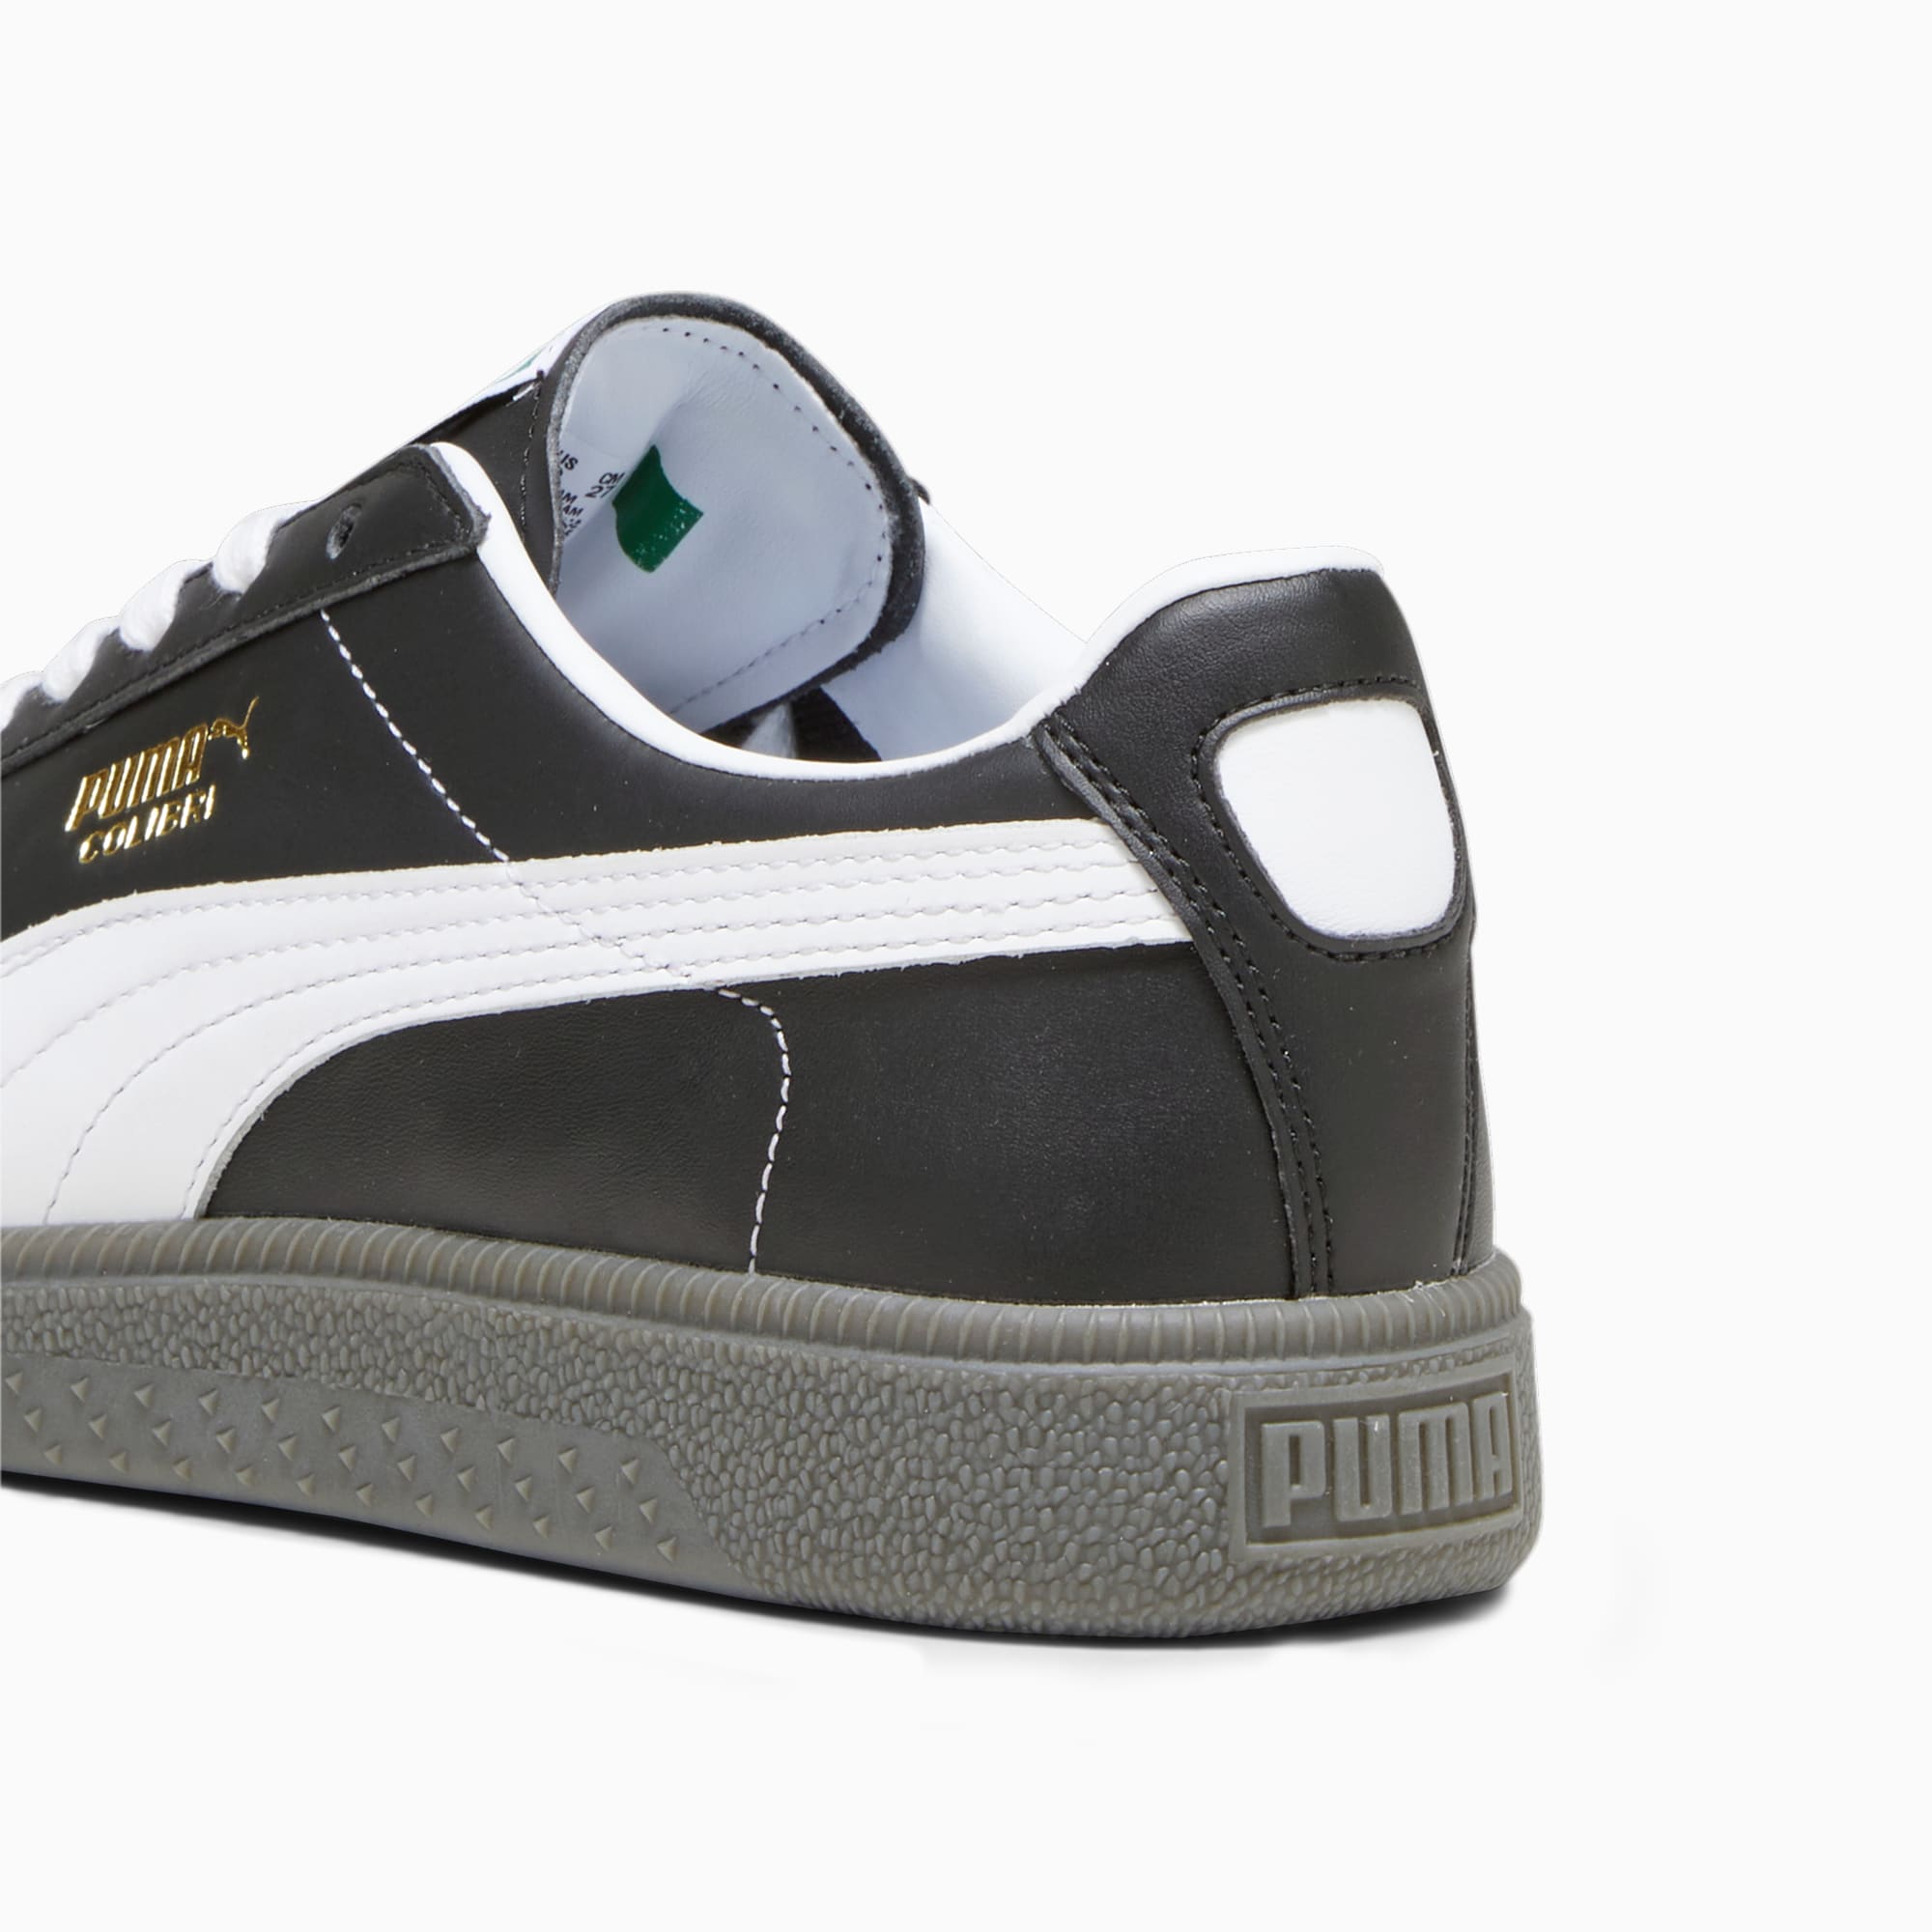 PUMA Colibri OG Sneakers Schuhe, Schwarz/Weiß, Größe: 36, Schuhe